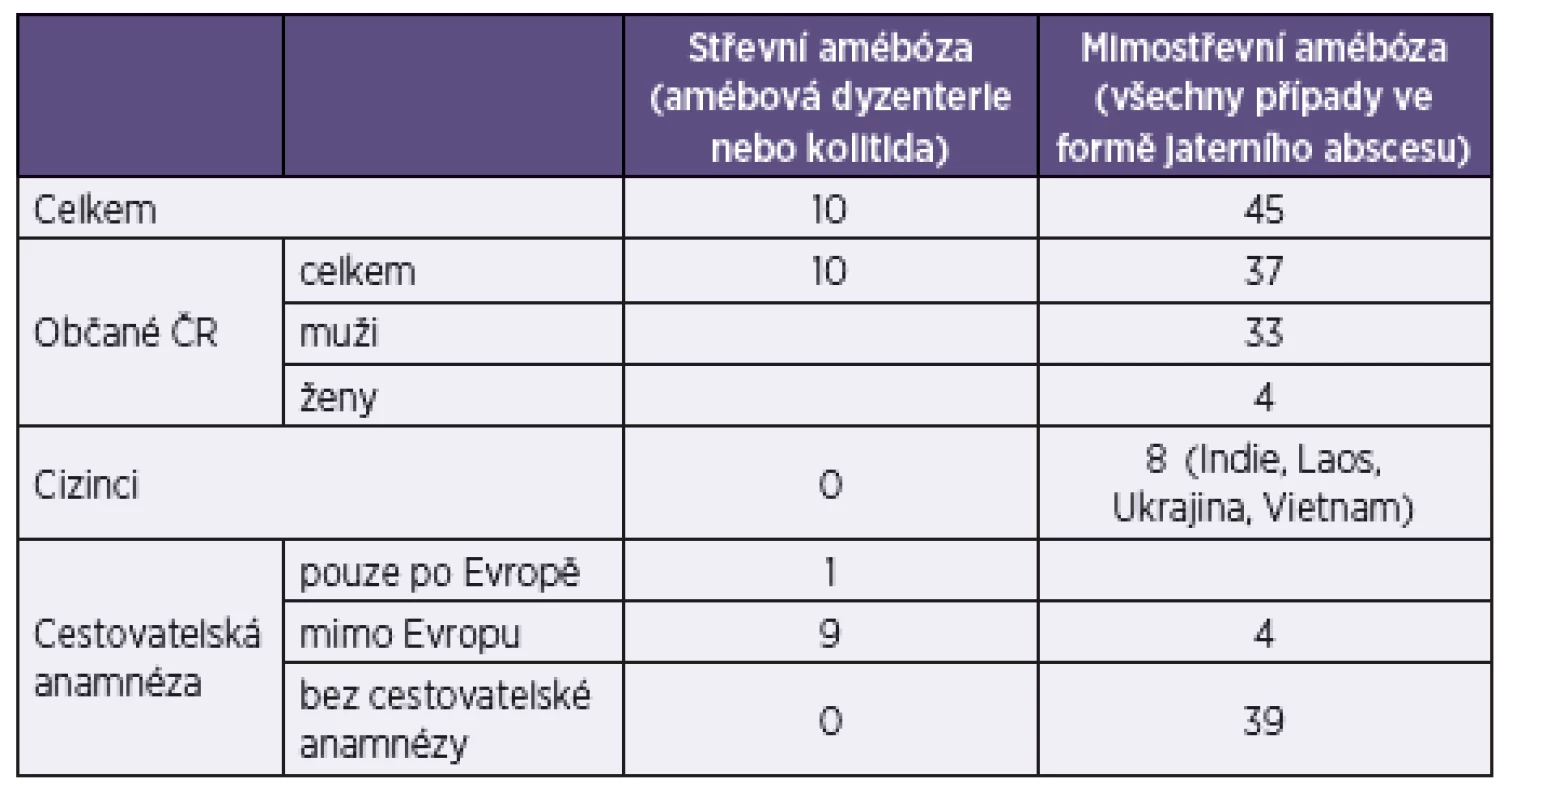 Počet případů klinicky manifestní amébózy v České republice v letech 1994–2013
Table 1. Cases of clinically manifest amebiosis in the Czech Republic in 1994–2013